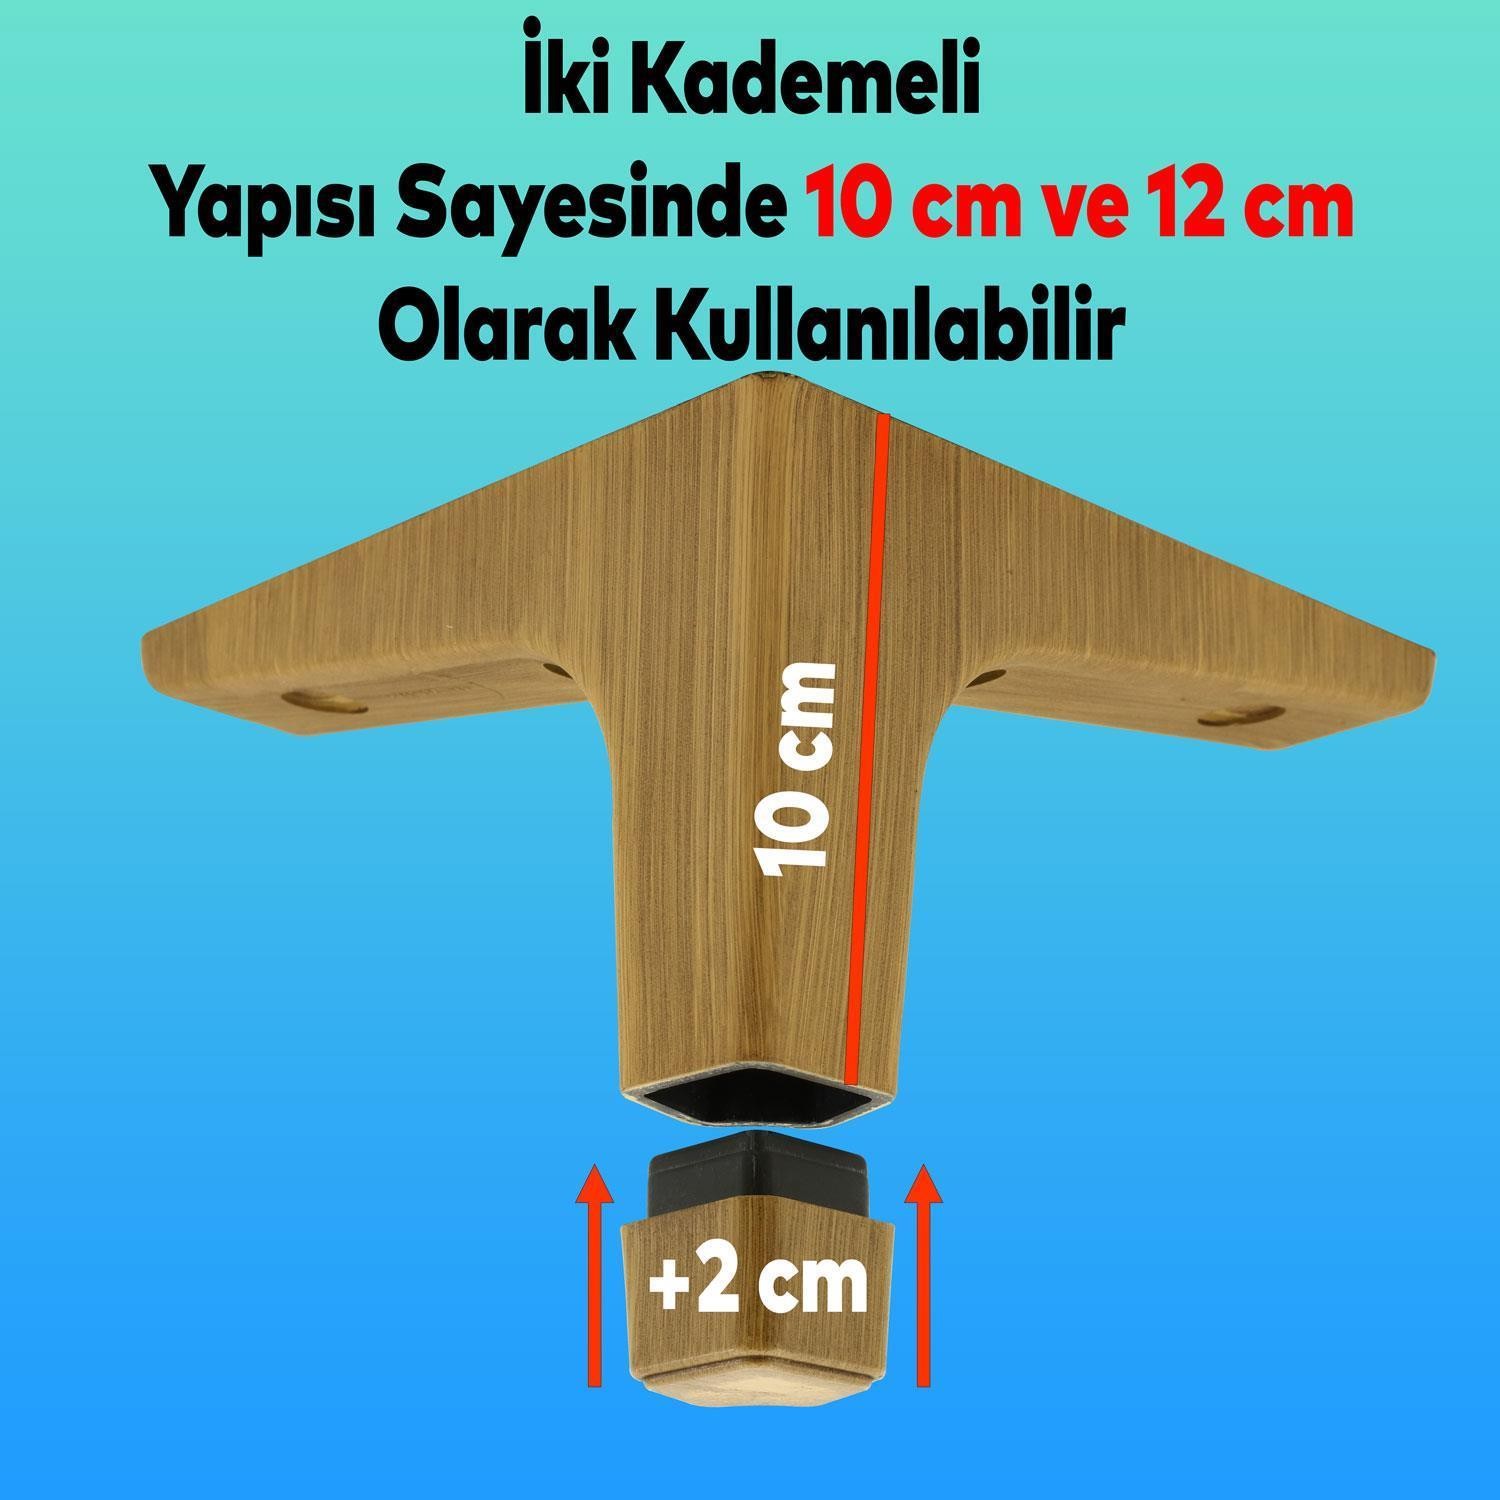 Sedef 6'lı Set Mobilya TV Ünitesi Çekyat Koltuk Kanepe Destek Ayağı 12 cm Koyu Ceviz Baza Ayak